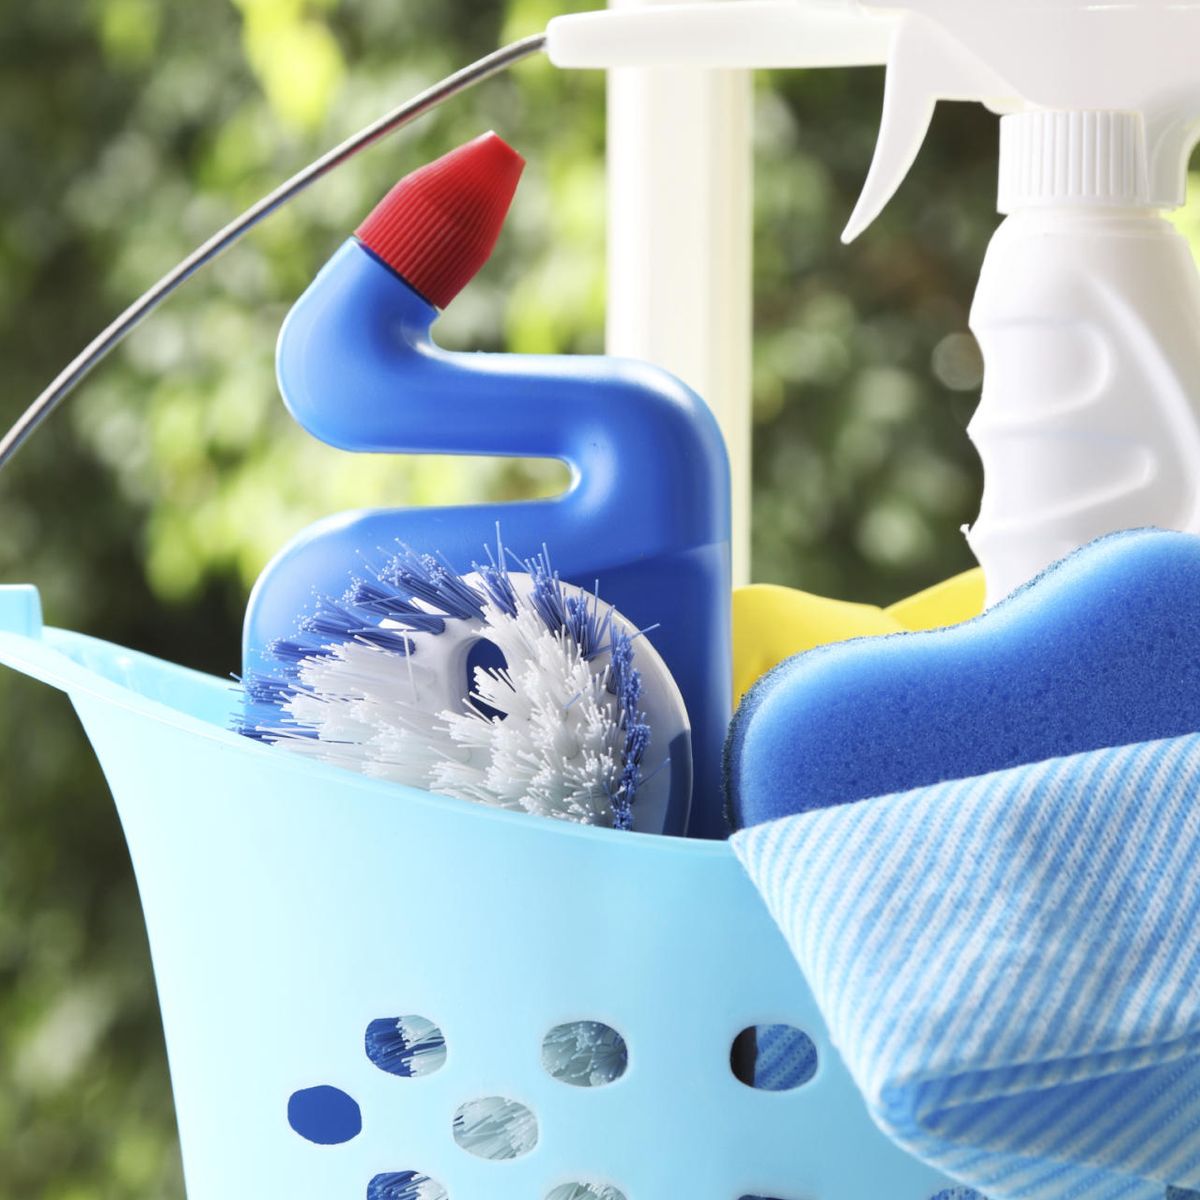 Los cinco productos que utilizas en la limpieza de tu hogar que deberías  desterrar